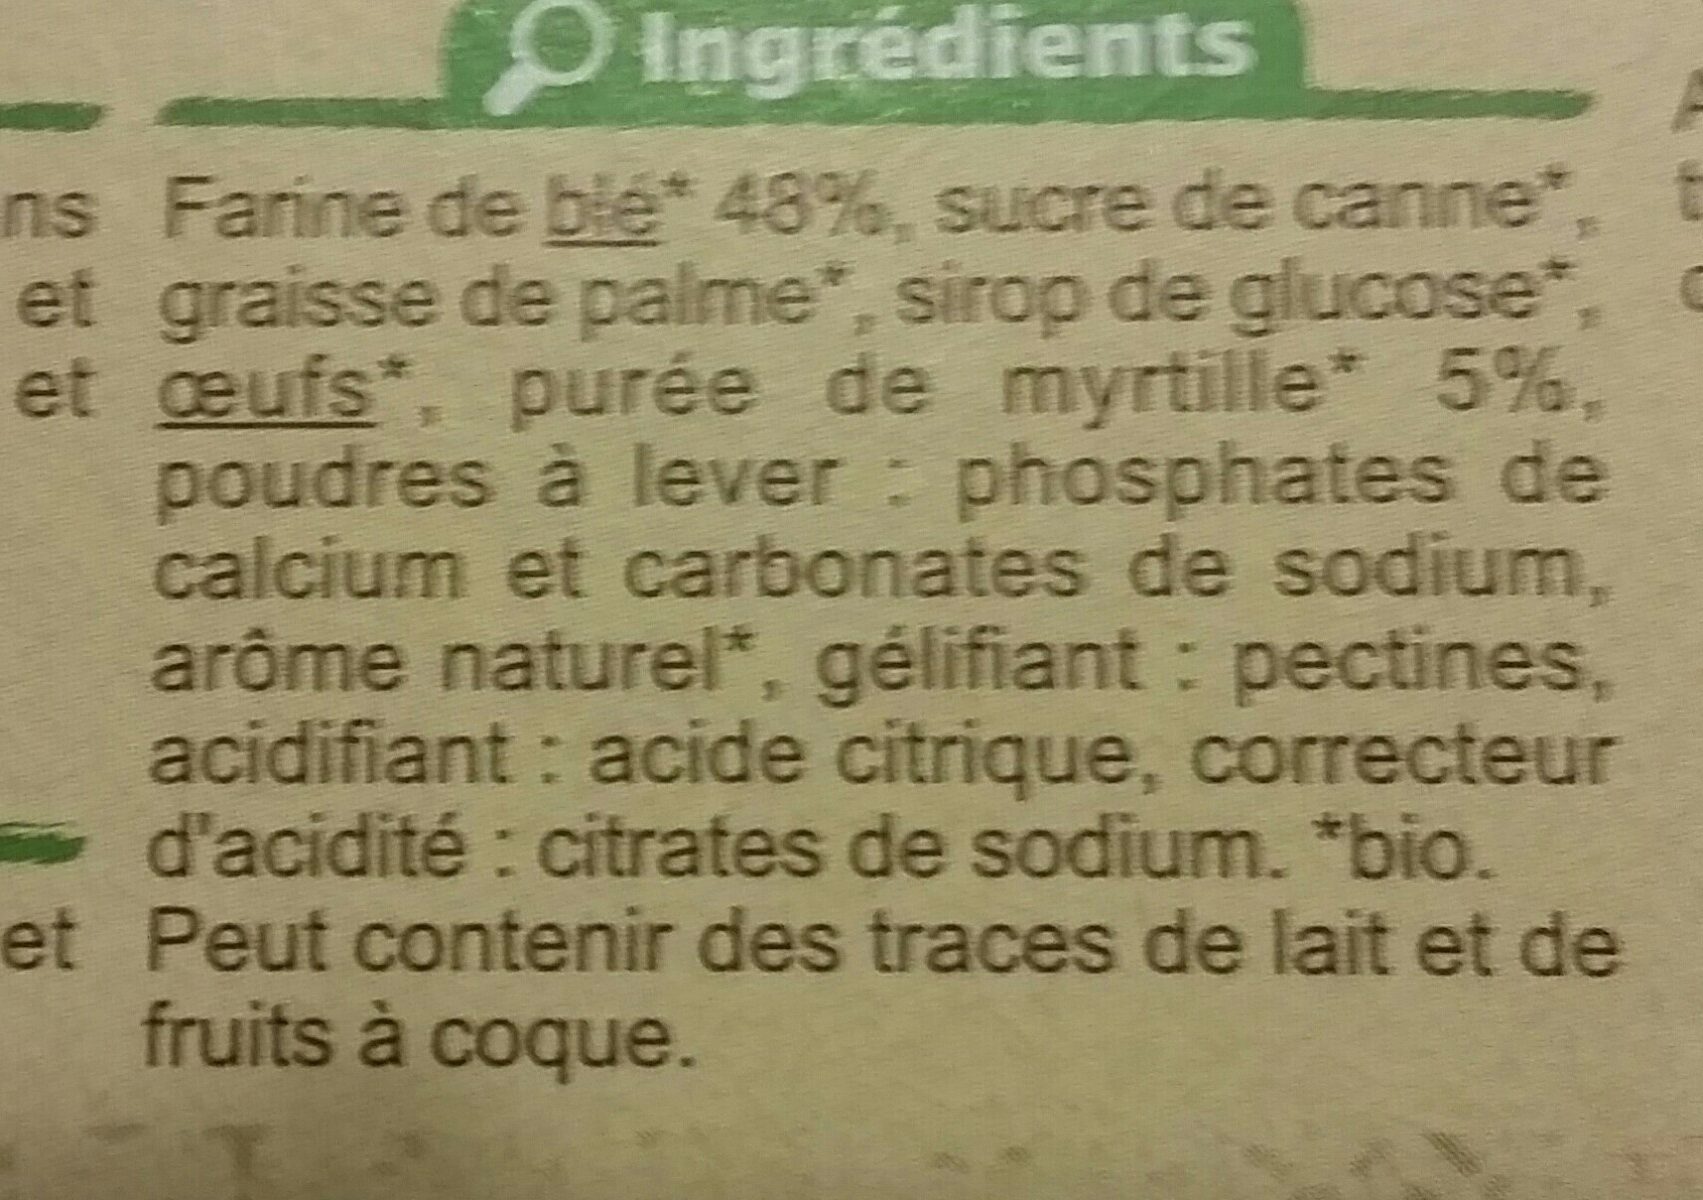 Lunettes à la myrtille - Ingredienti - fr